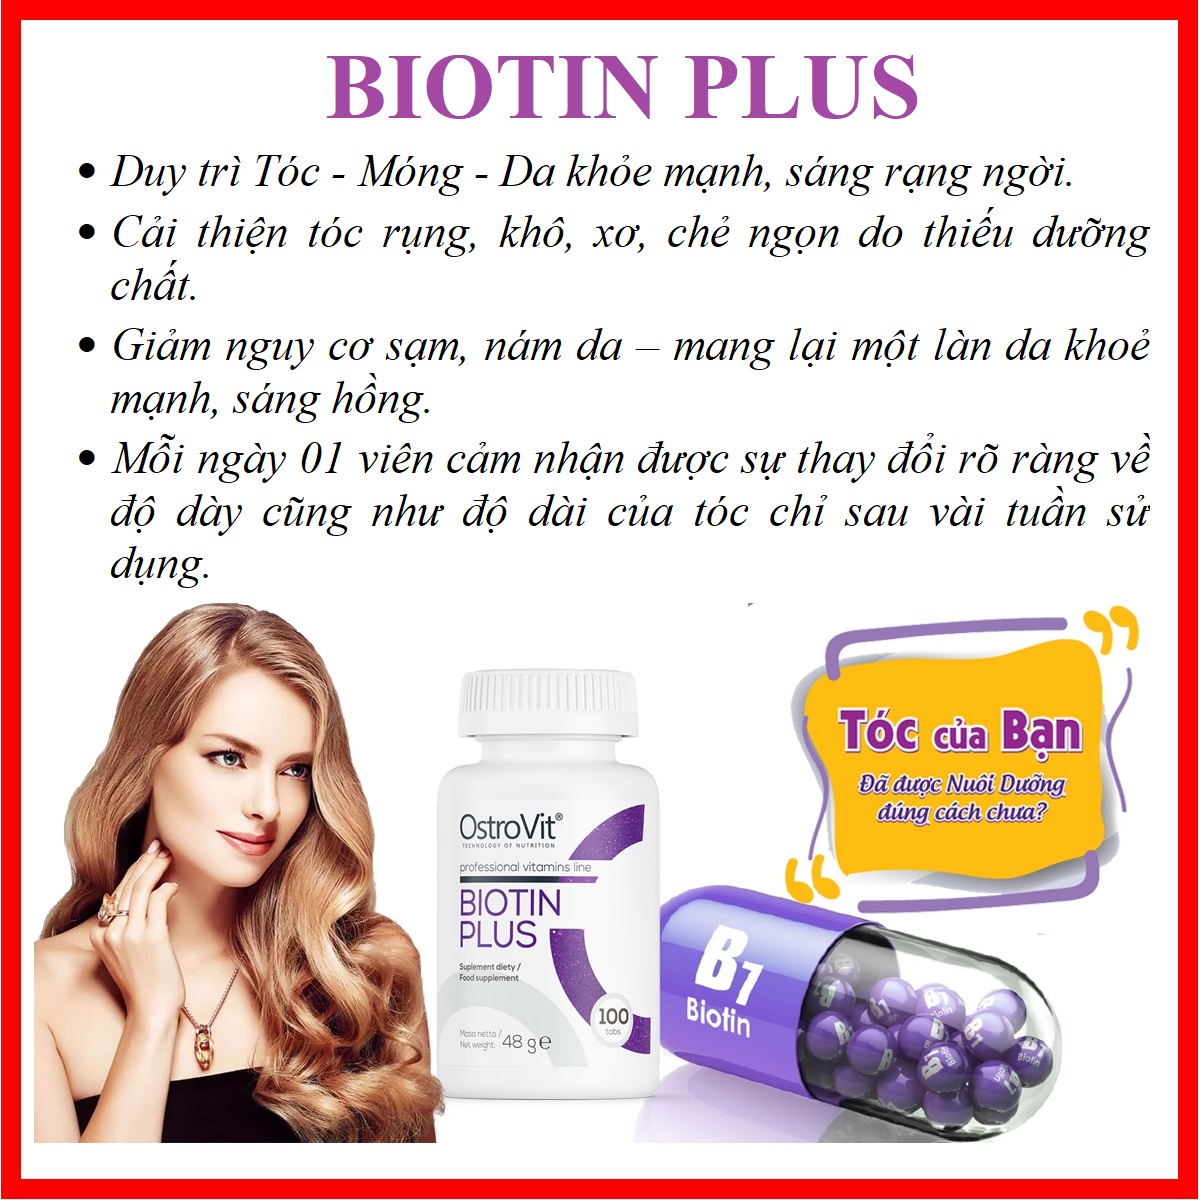 Ostrovit Biotin Plus 100 Tablets - Viên uống bổ sung Biotin, dưỡng chất